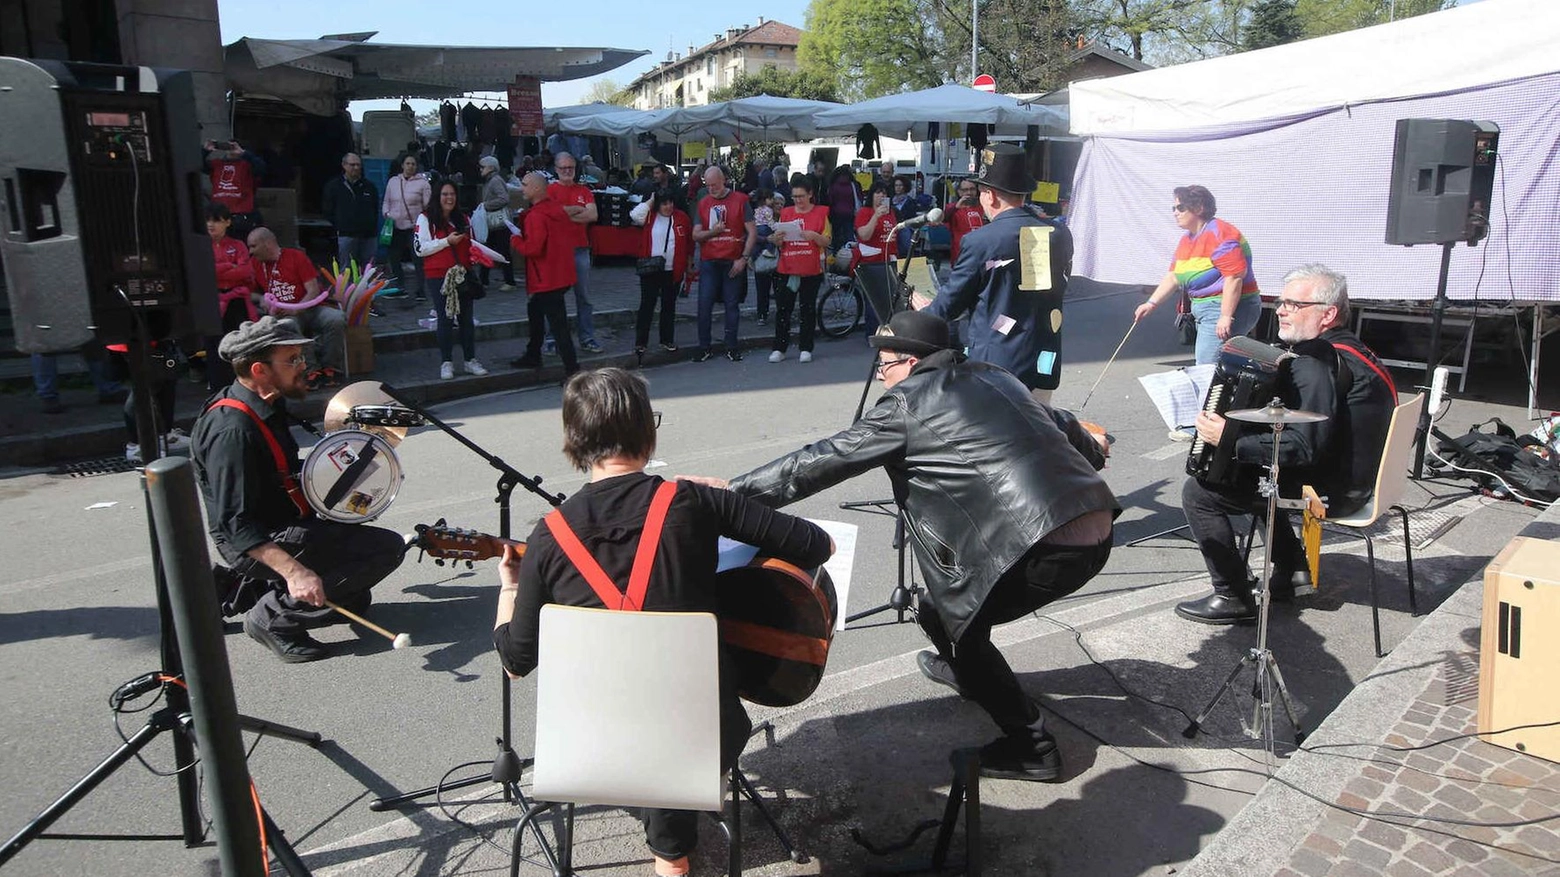 Il grande circo del lavoro. Flash mob al mercato di Monza per lo sciopero generale